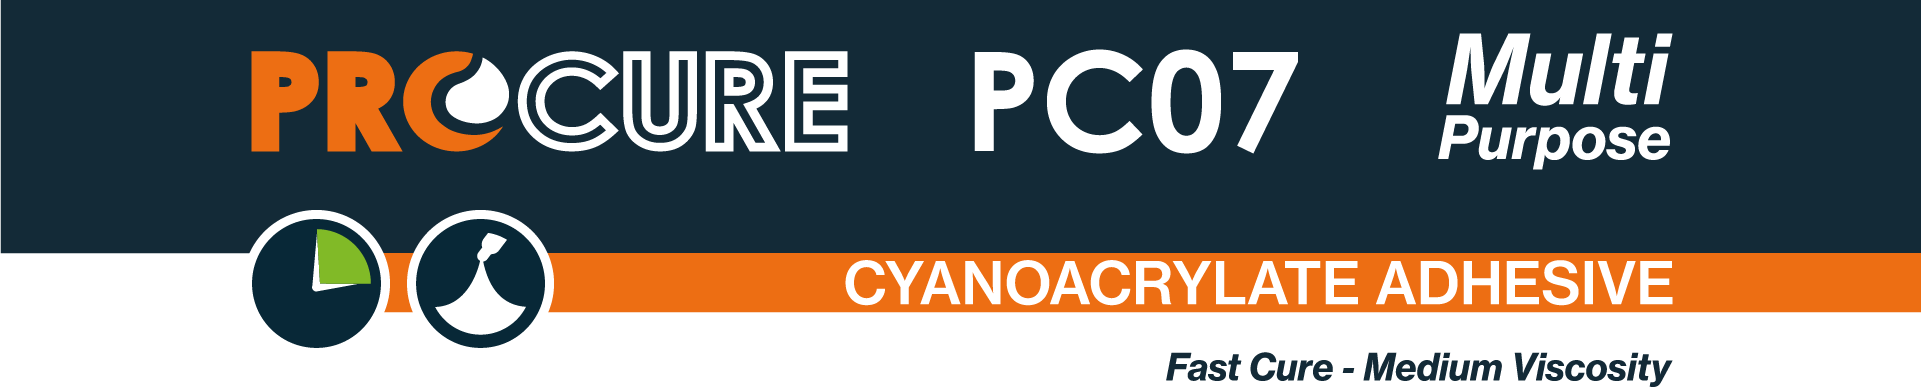 Procure PC07 Multi Purpose Cyanoacrylate Adhesive.